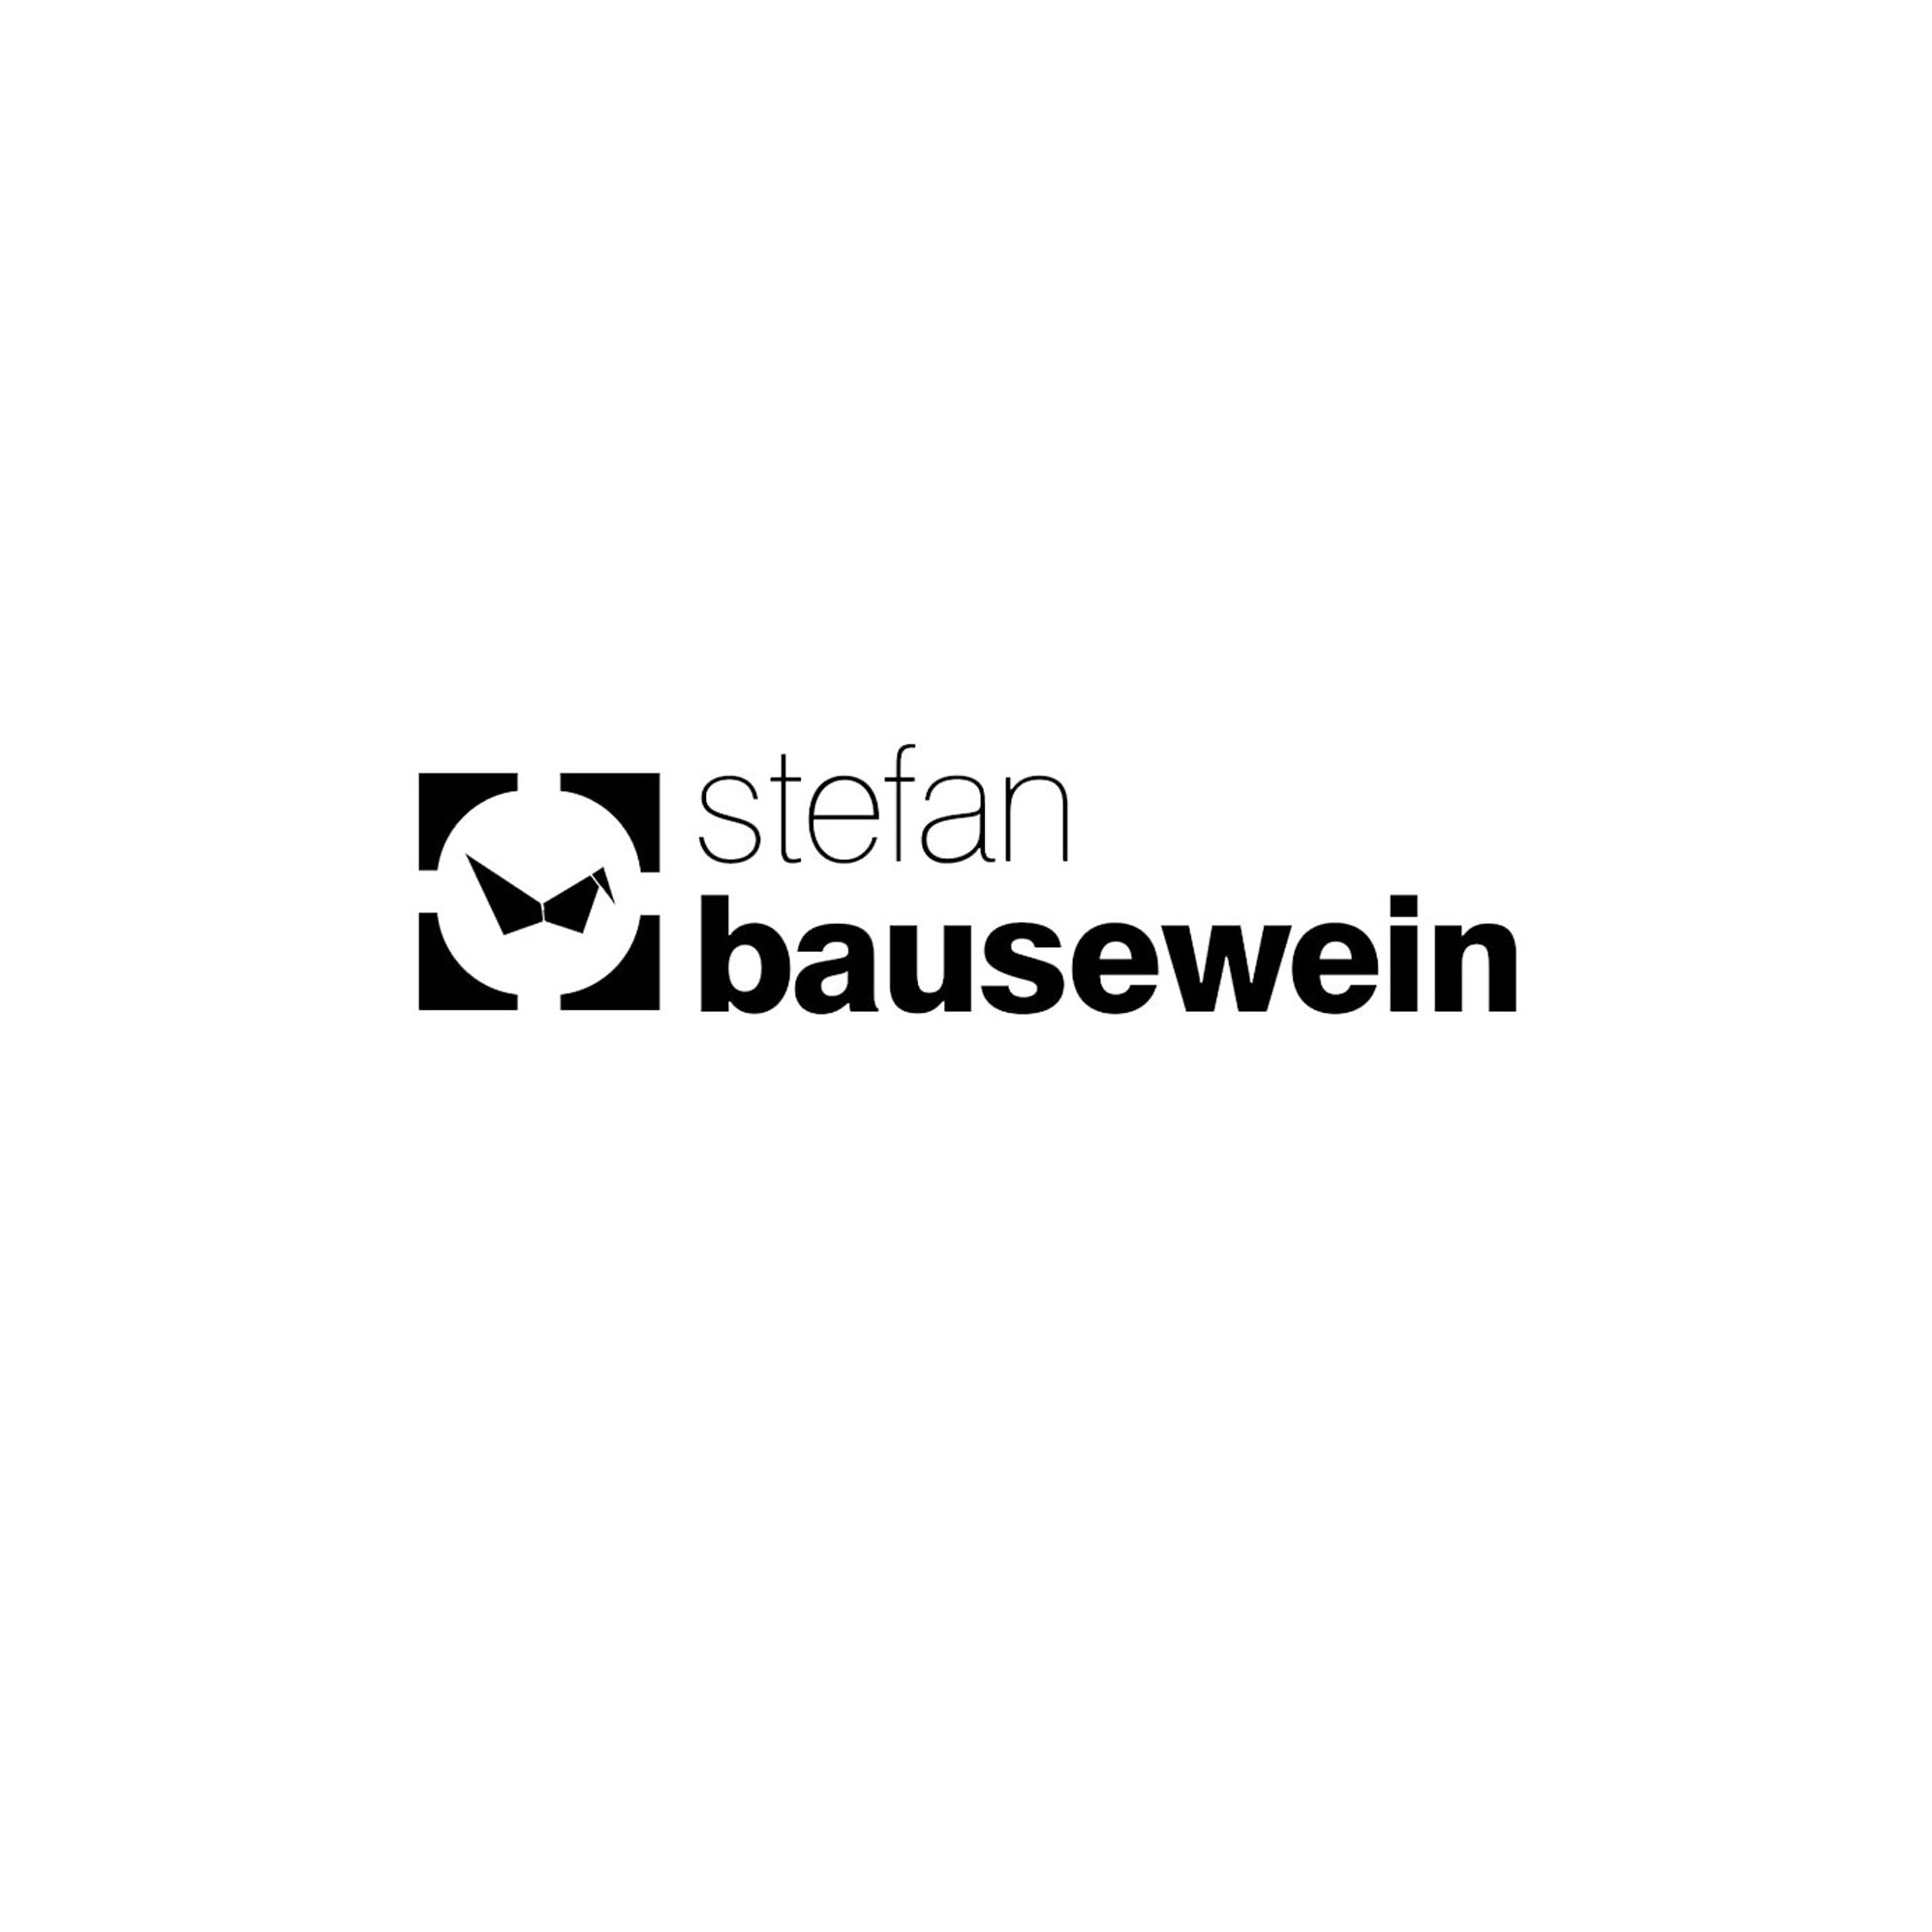 Stefan Bausewein Logo Markenkreation jos büro für Gestaltung Würzburg